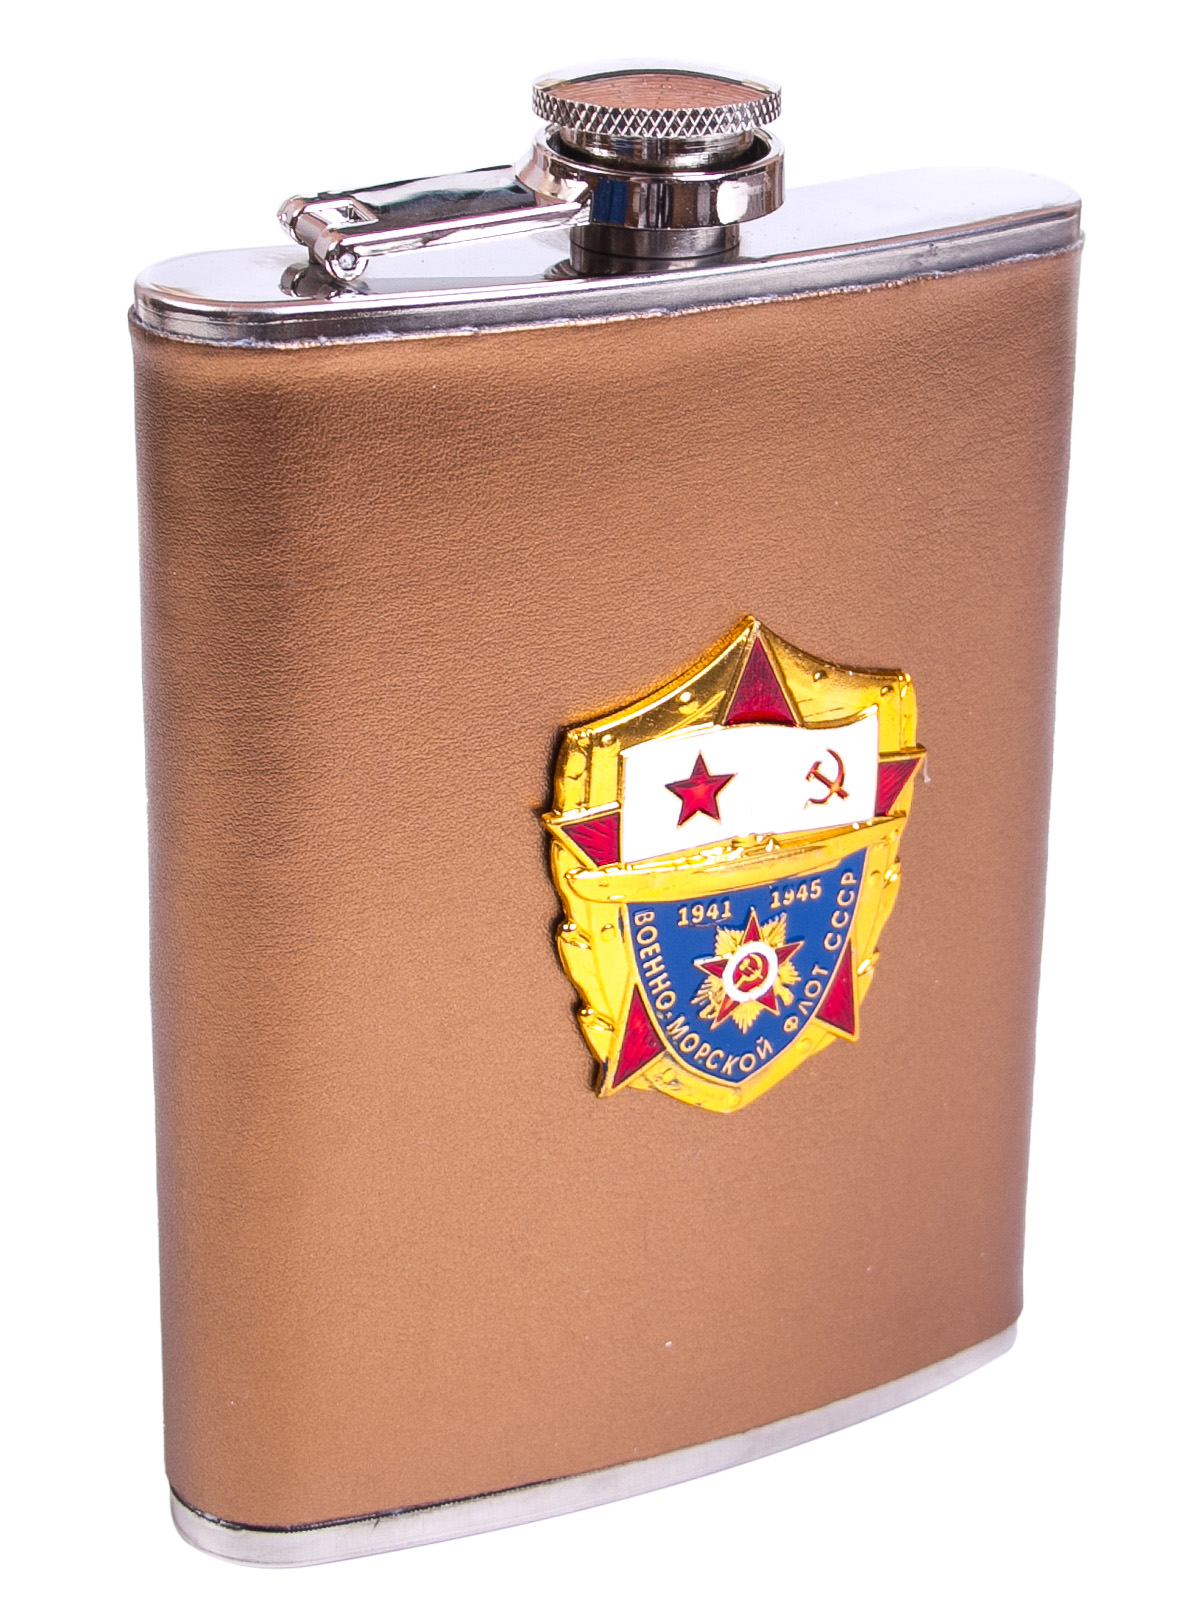 Фляжка для спиртных напитков "ВМФ СССР" в подарок ветерану